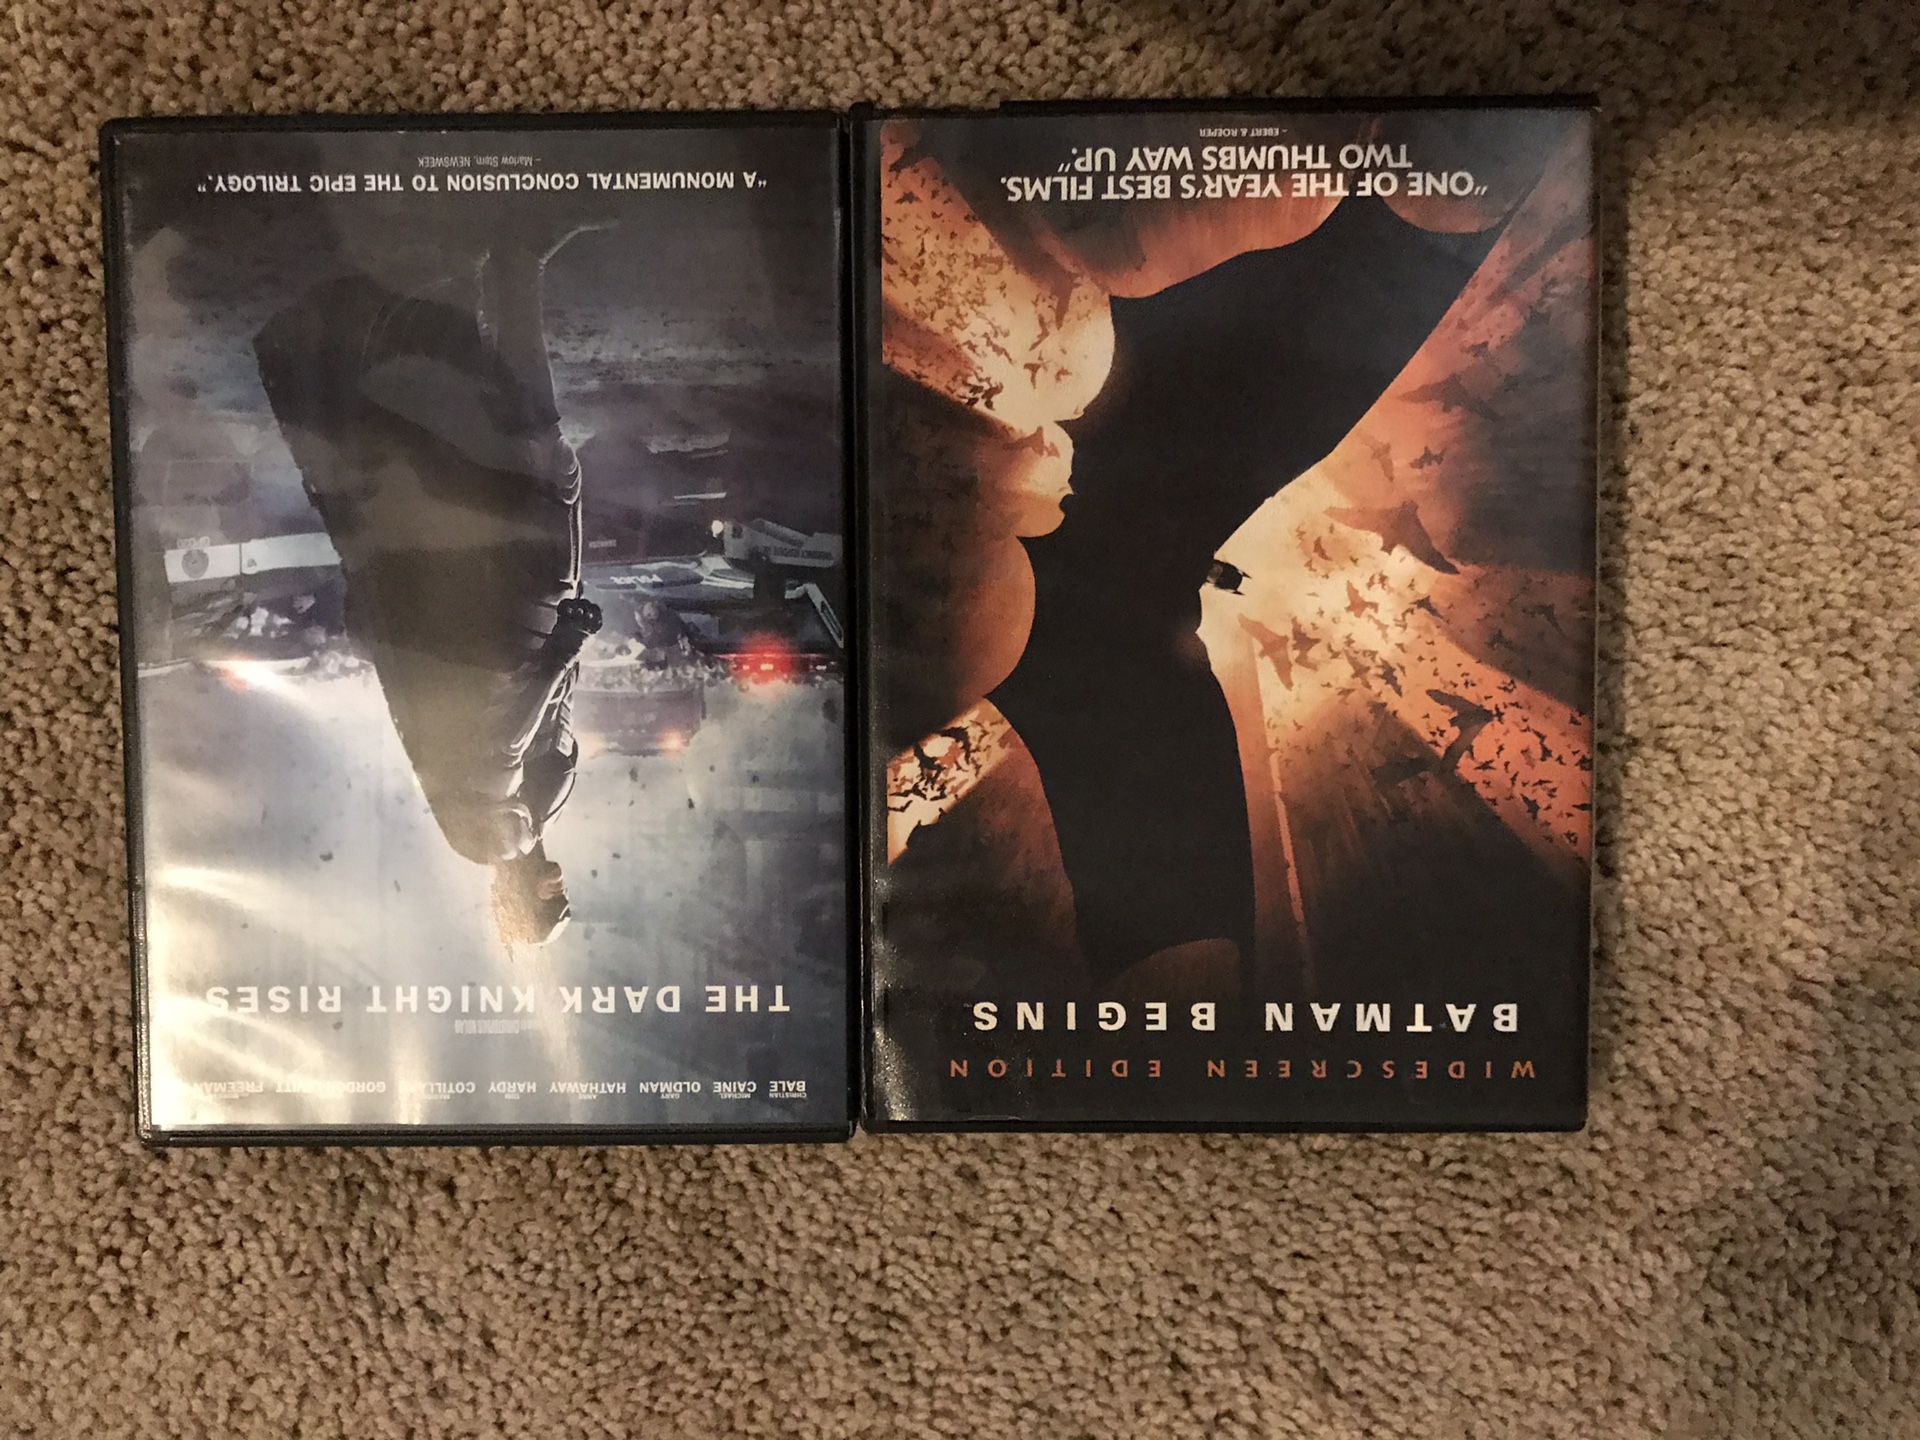 Batman trilogy